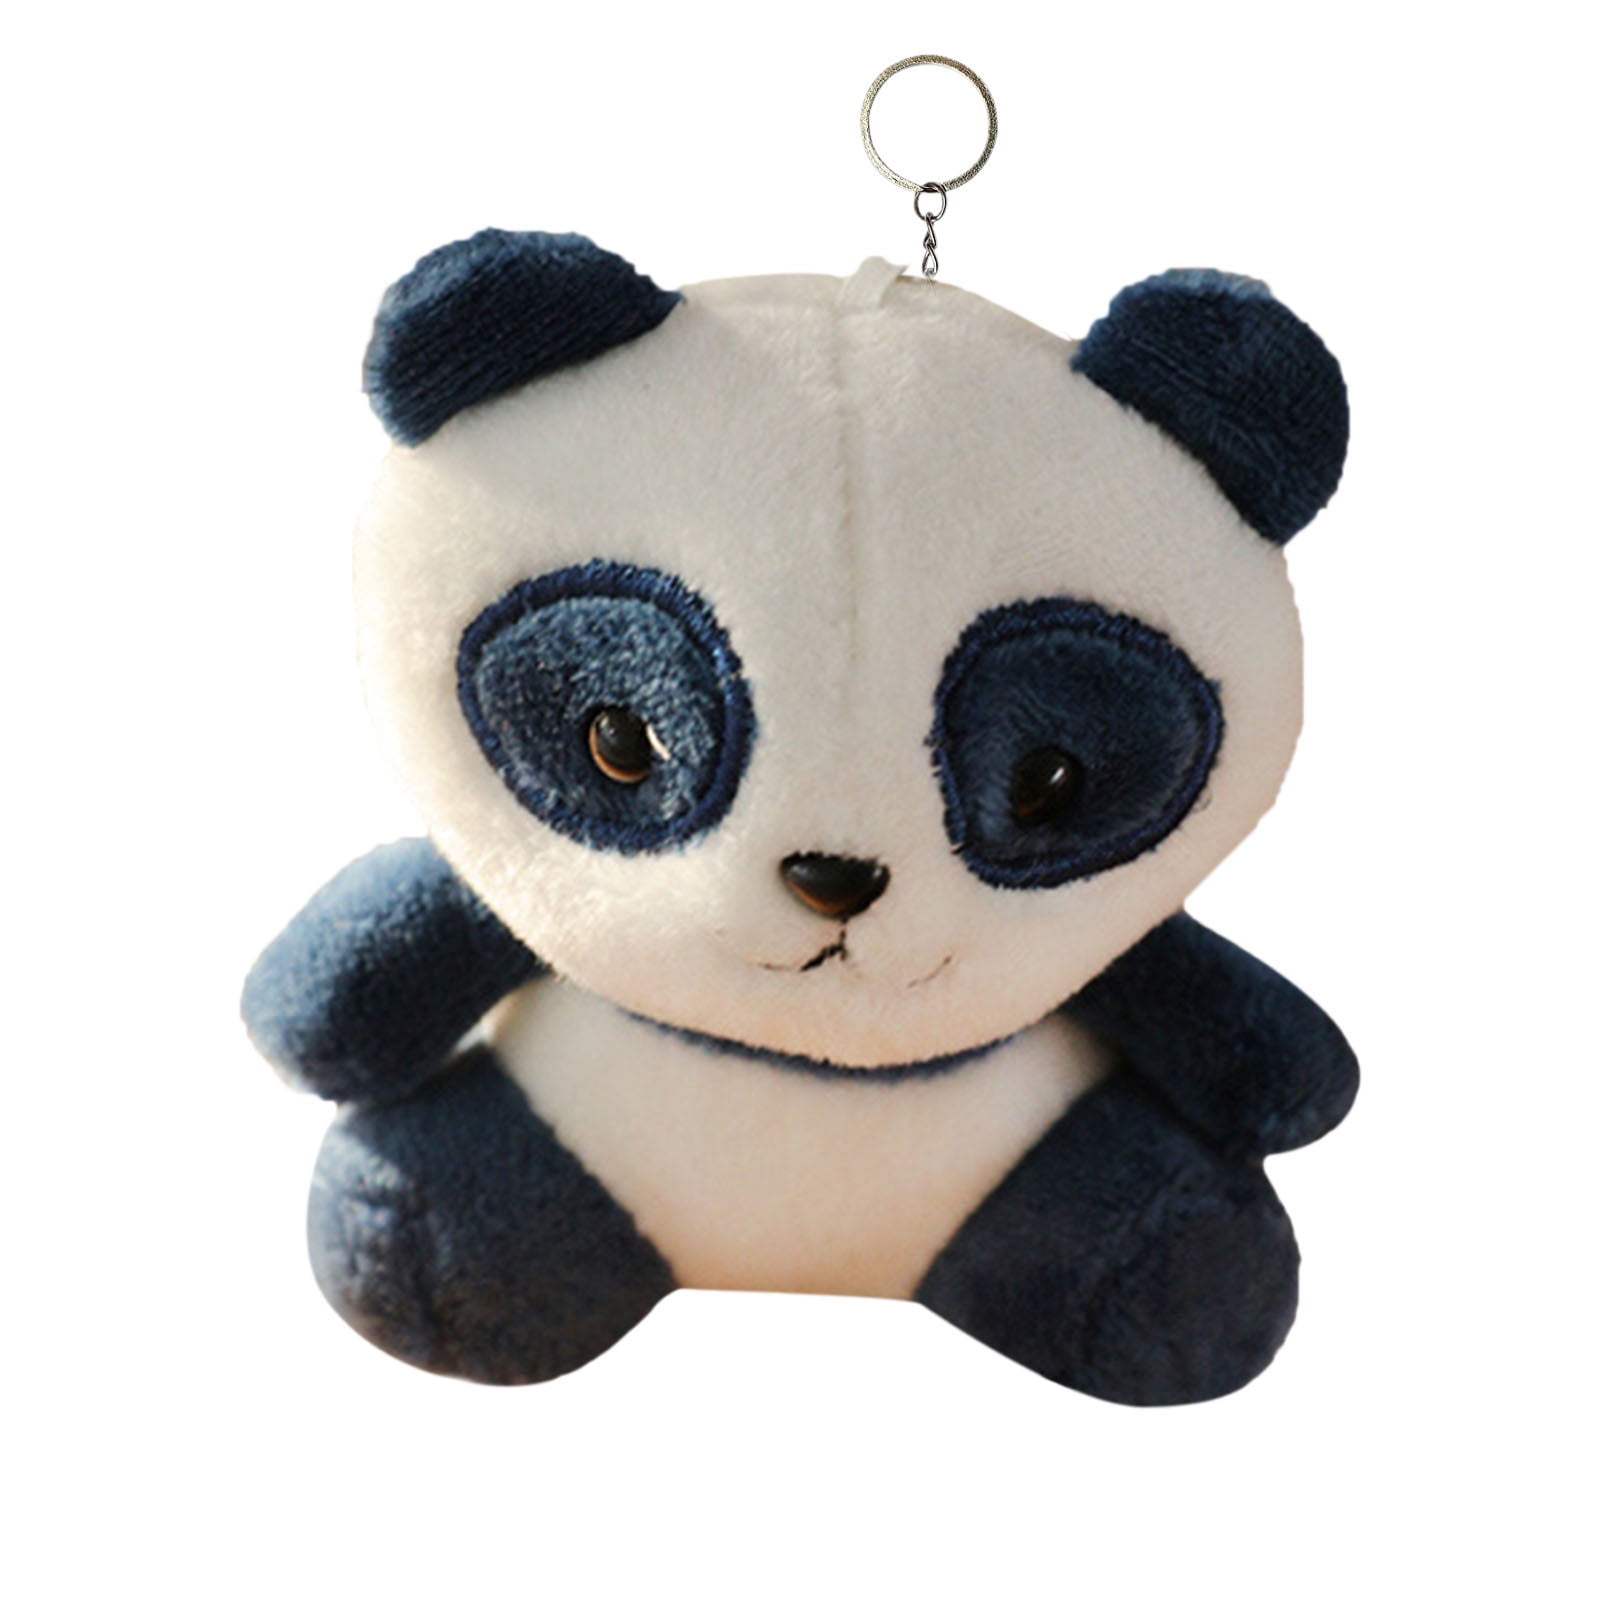 HOLIDYOYO Cute Plush Panda Keychain